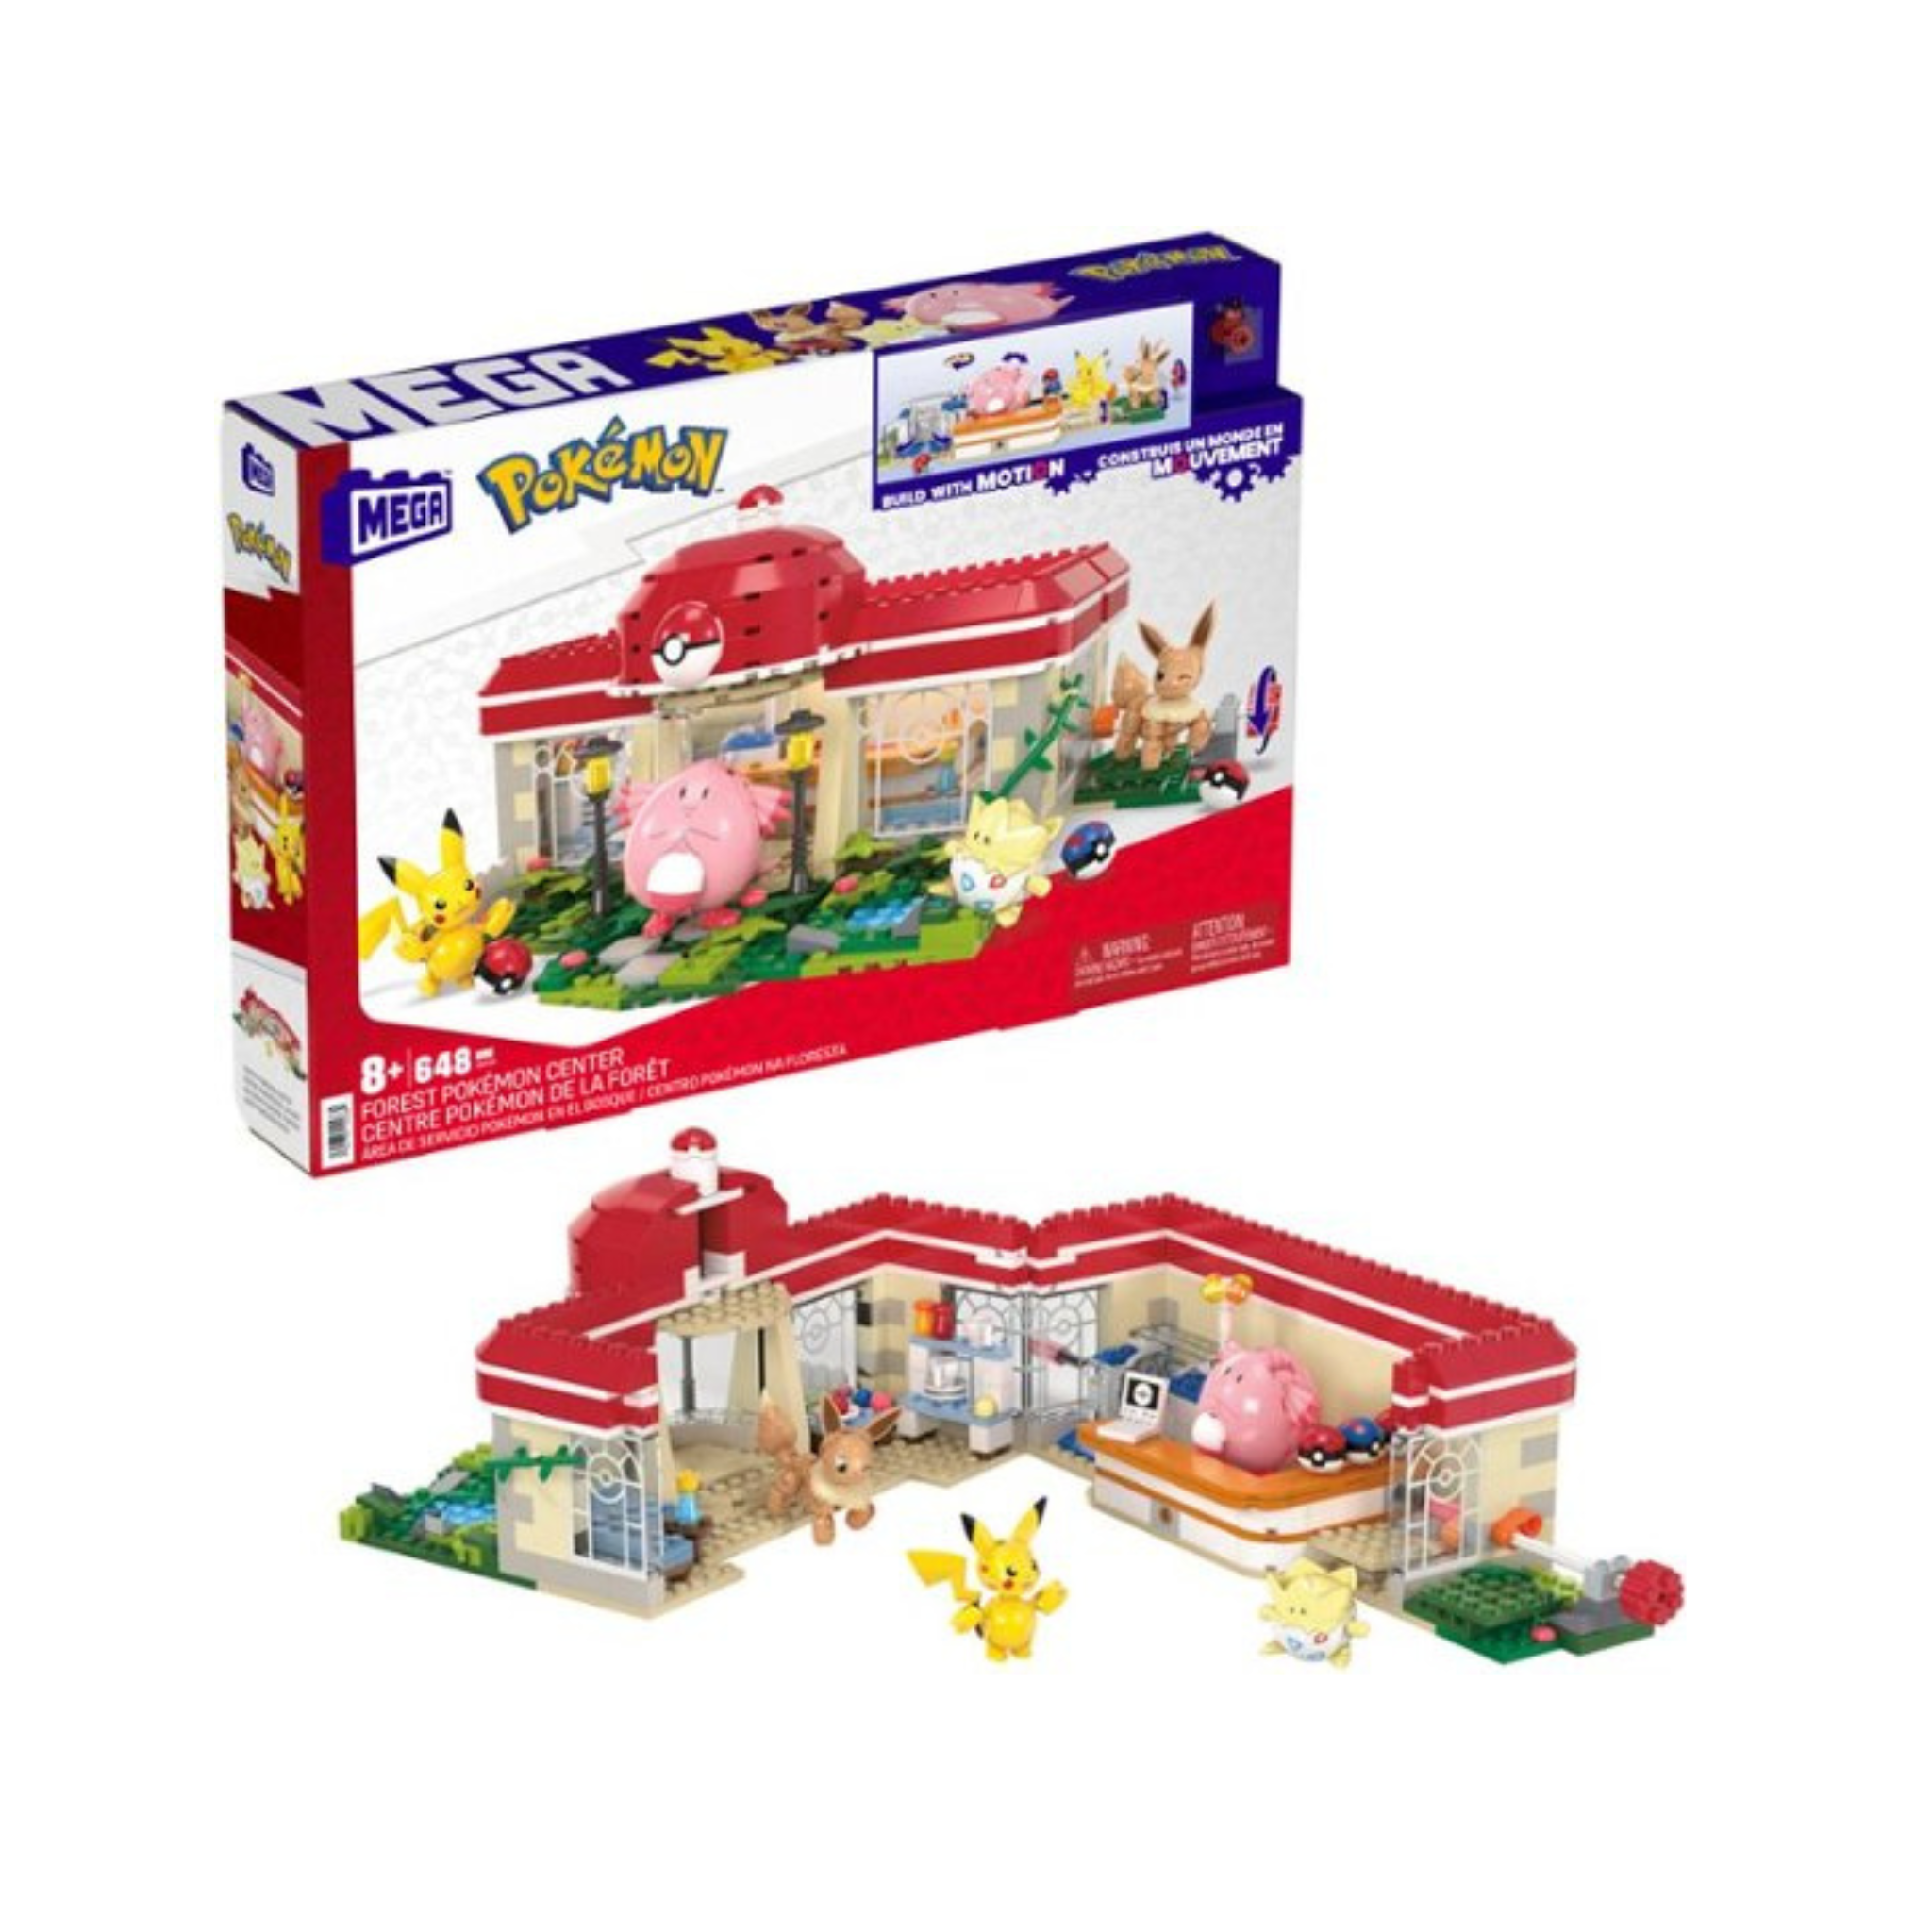 Popular 648-Piece Mega Construx Forest Pokémon Center Building Set w/ 4 Poseable Characters